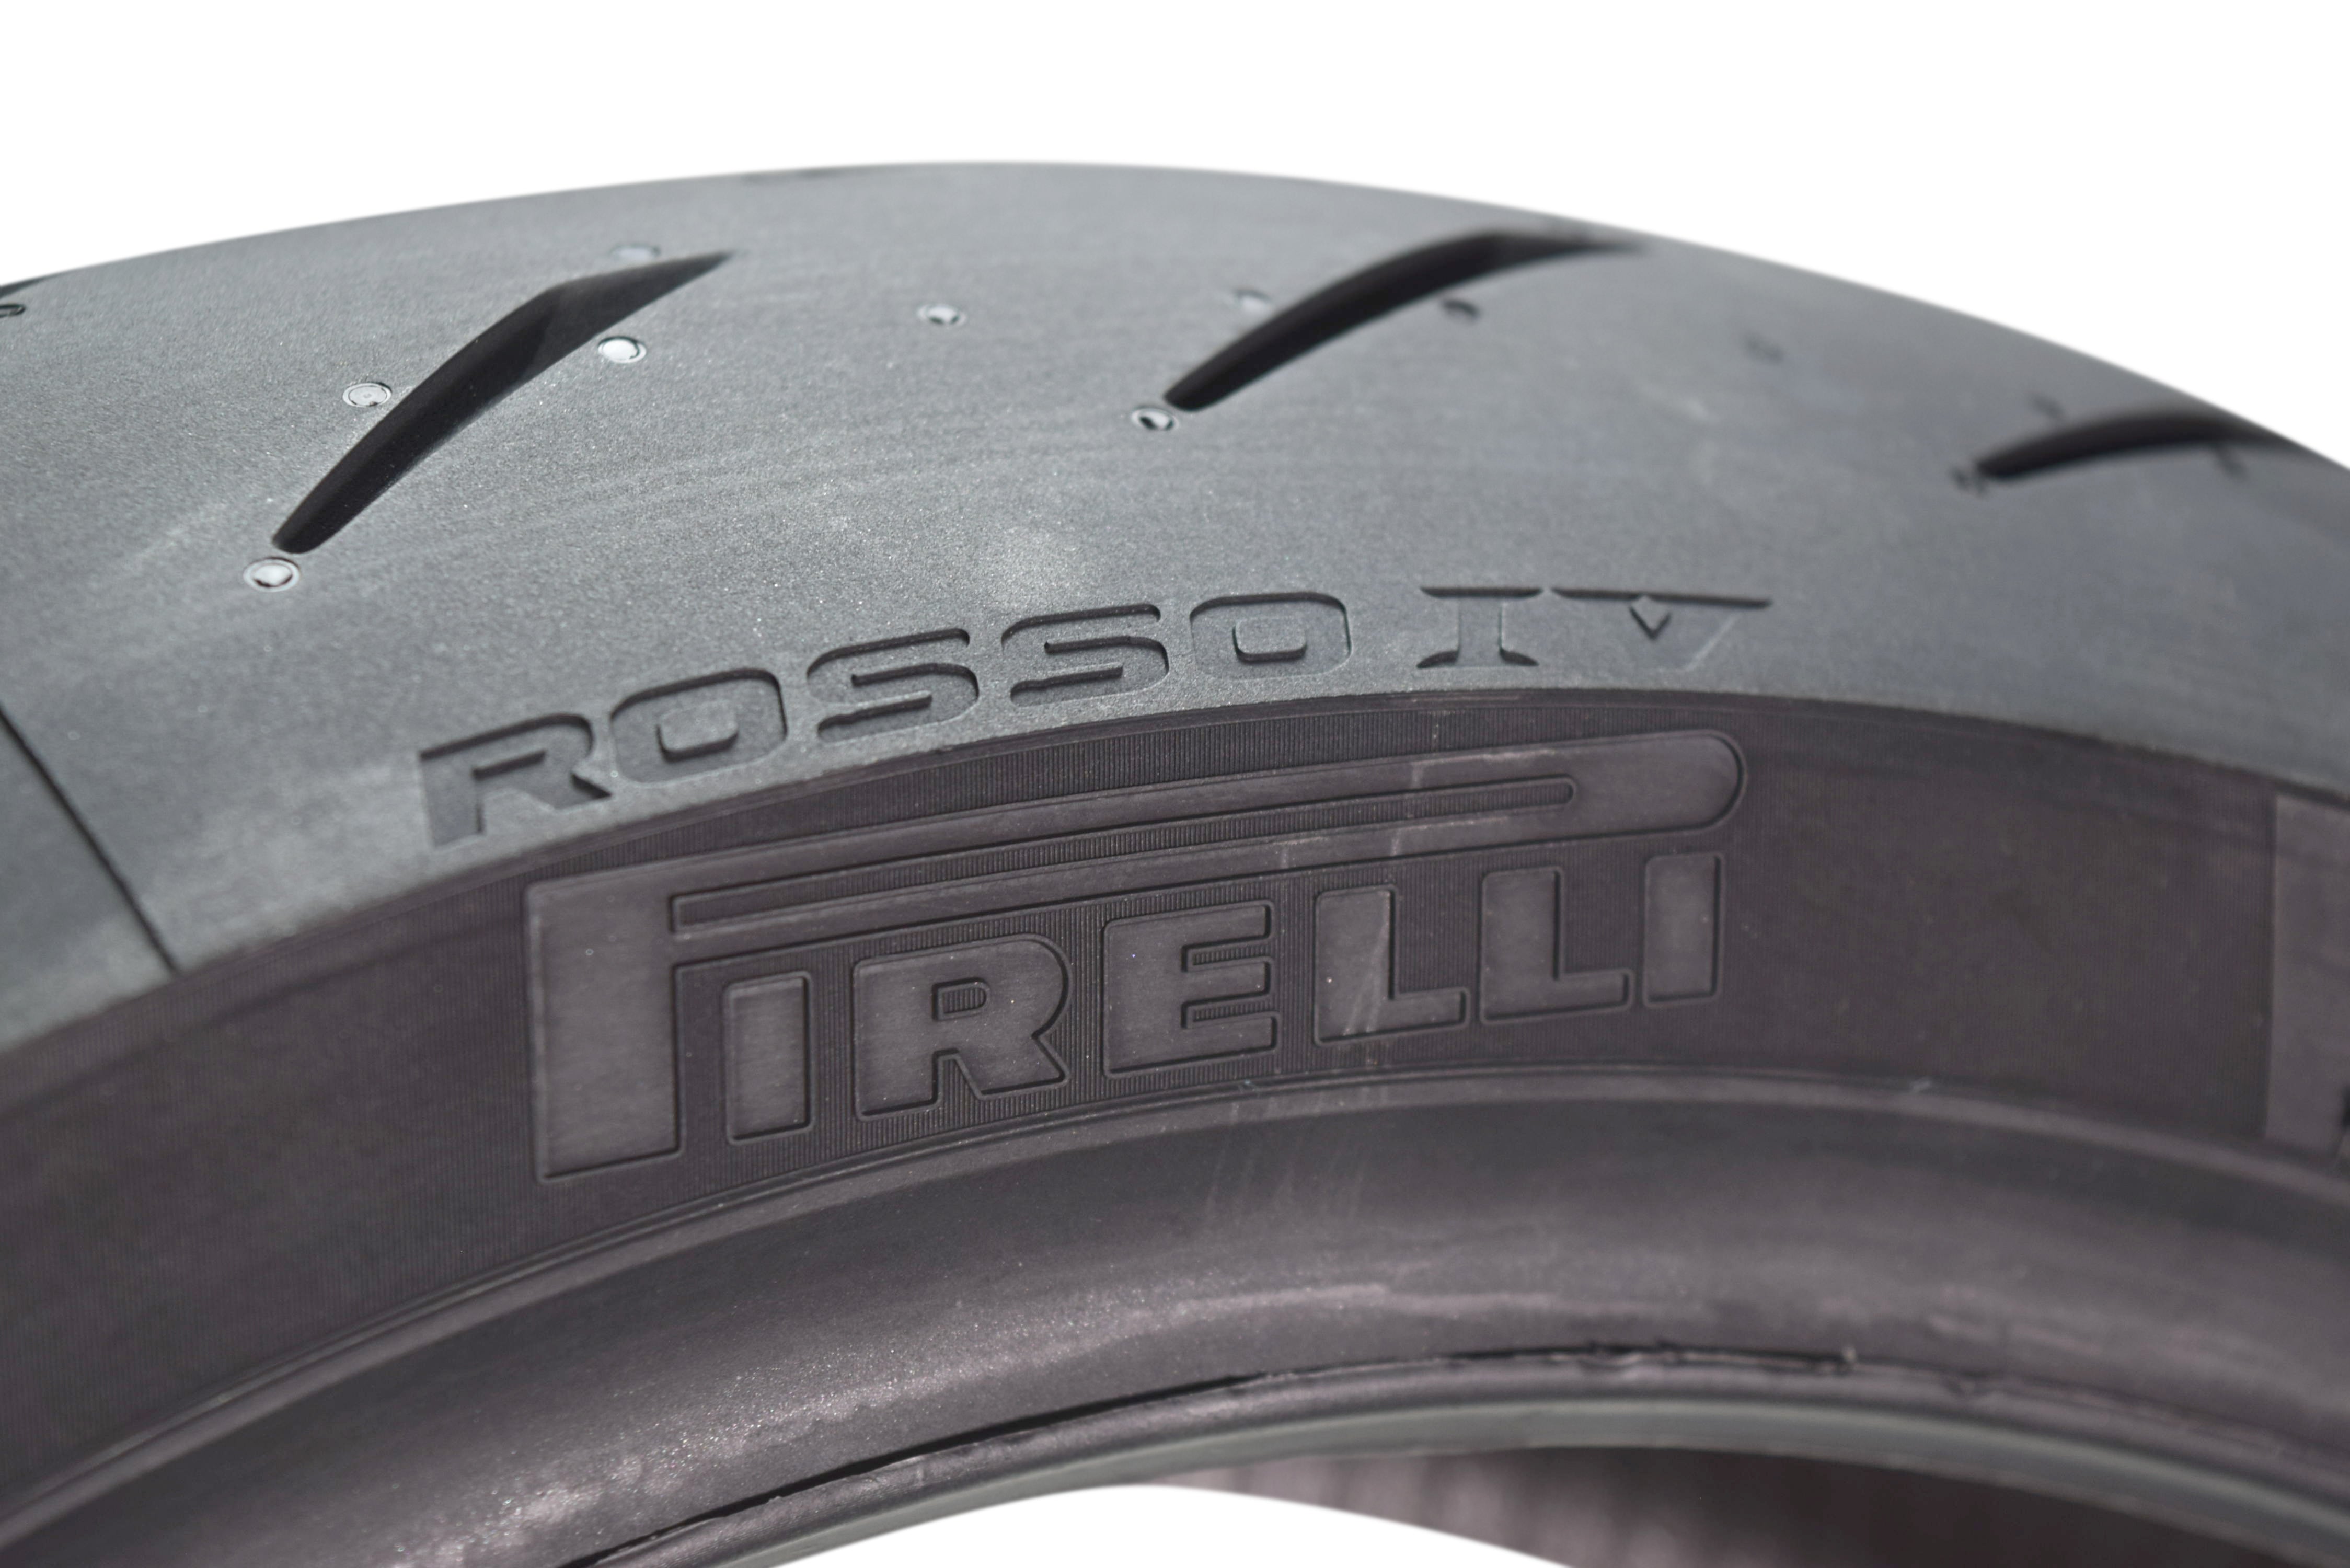 Pirelli Diablo Rosso IV Street Sport 160/60ZR17 Rear Motorcycle Tire 160/60-17